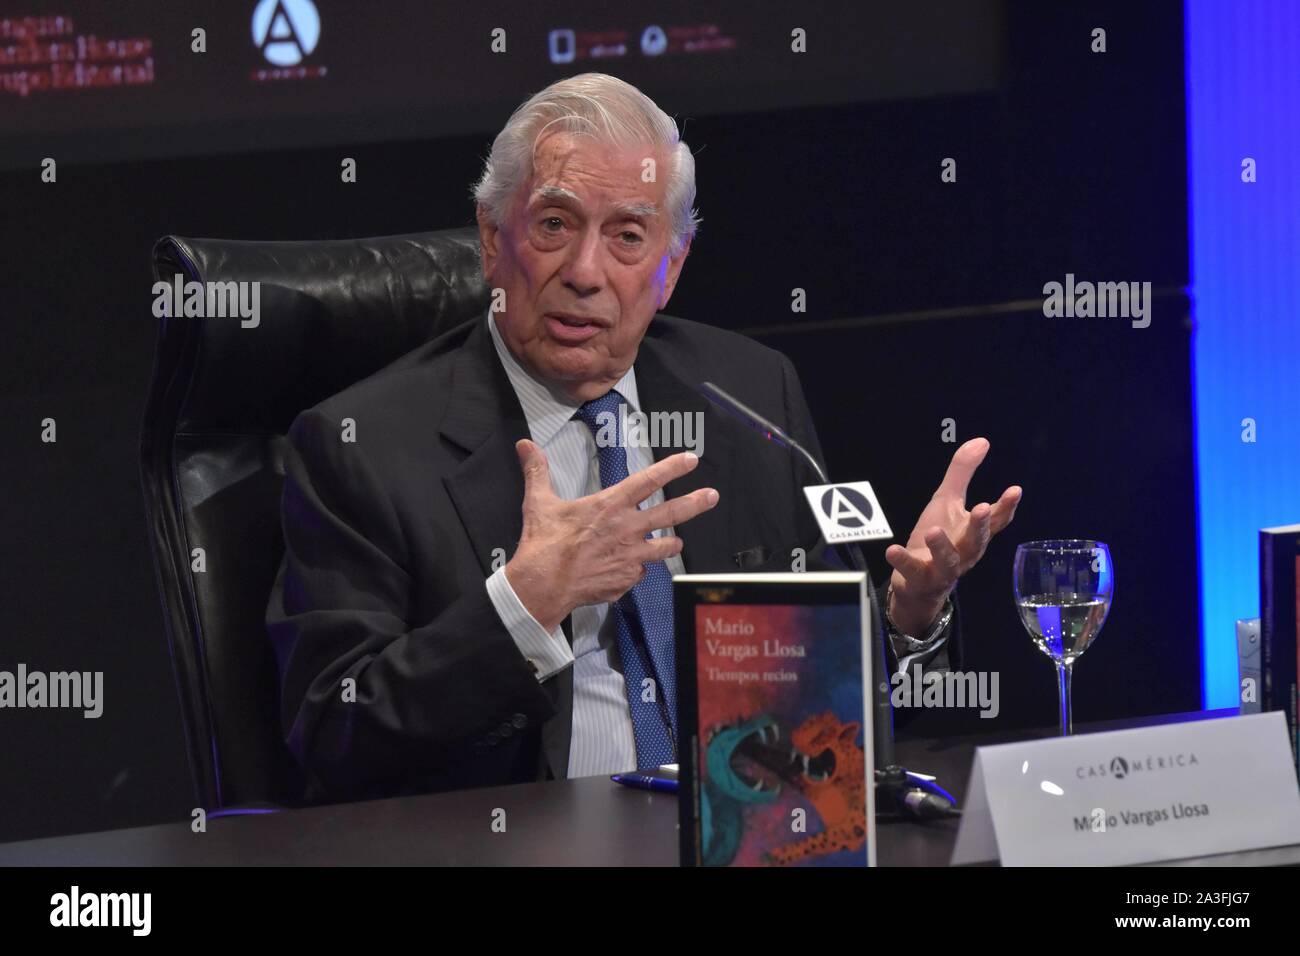 Madrid, España. 08 Oct, 2019. Mario Vargas Llosa durante tiempos recios reservar premiere en Madrid el martes, 08 de octubre de 2019 Créditos: Cordon PRESS/Alamy Live News Foto de stock